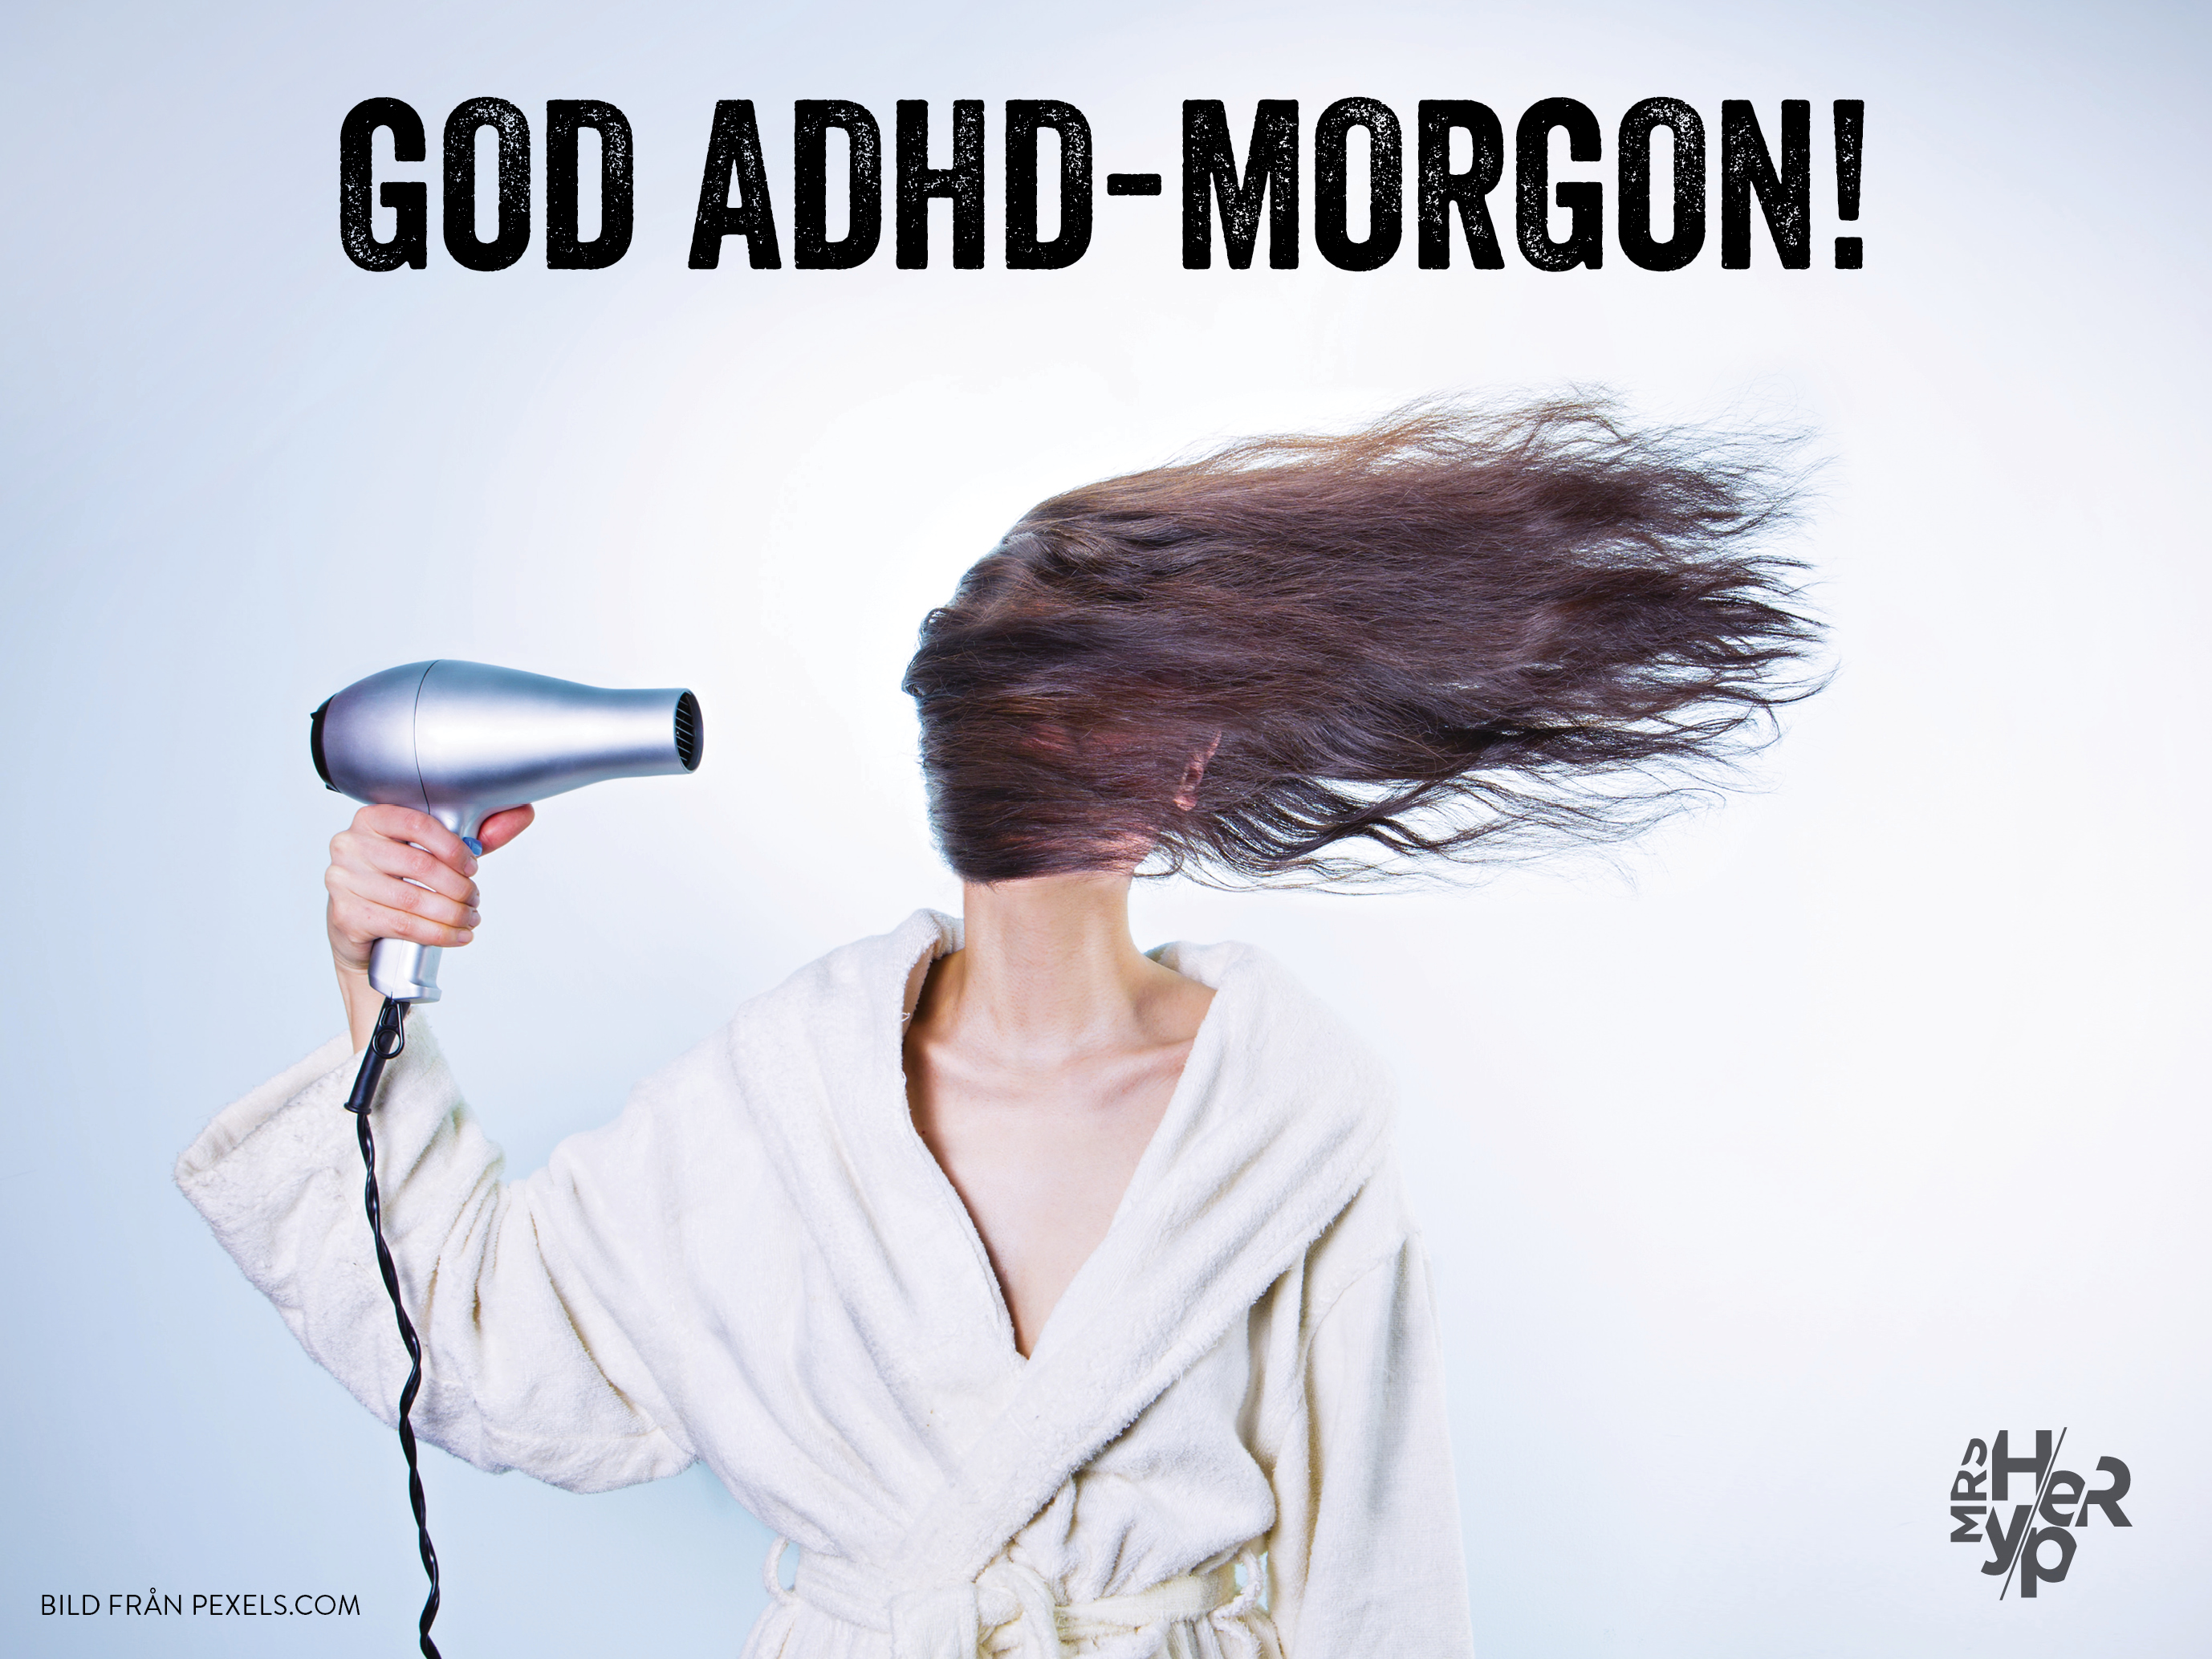 ADHD-skola 2 – Morgonrutiner